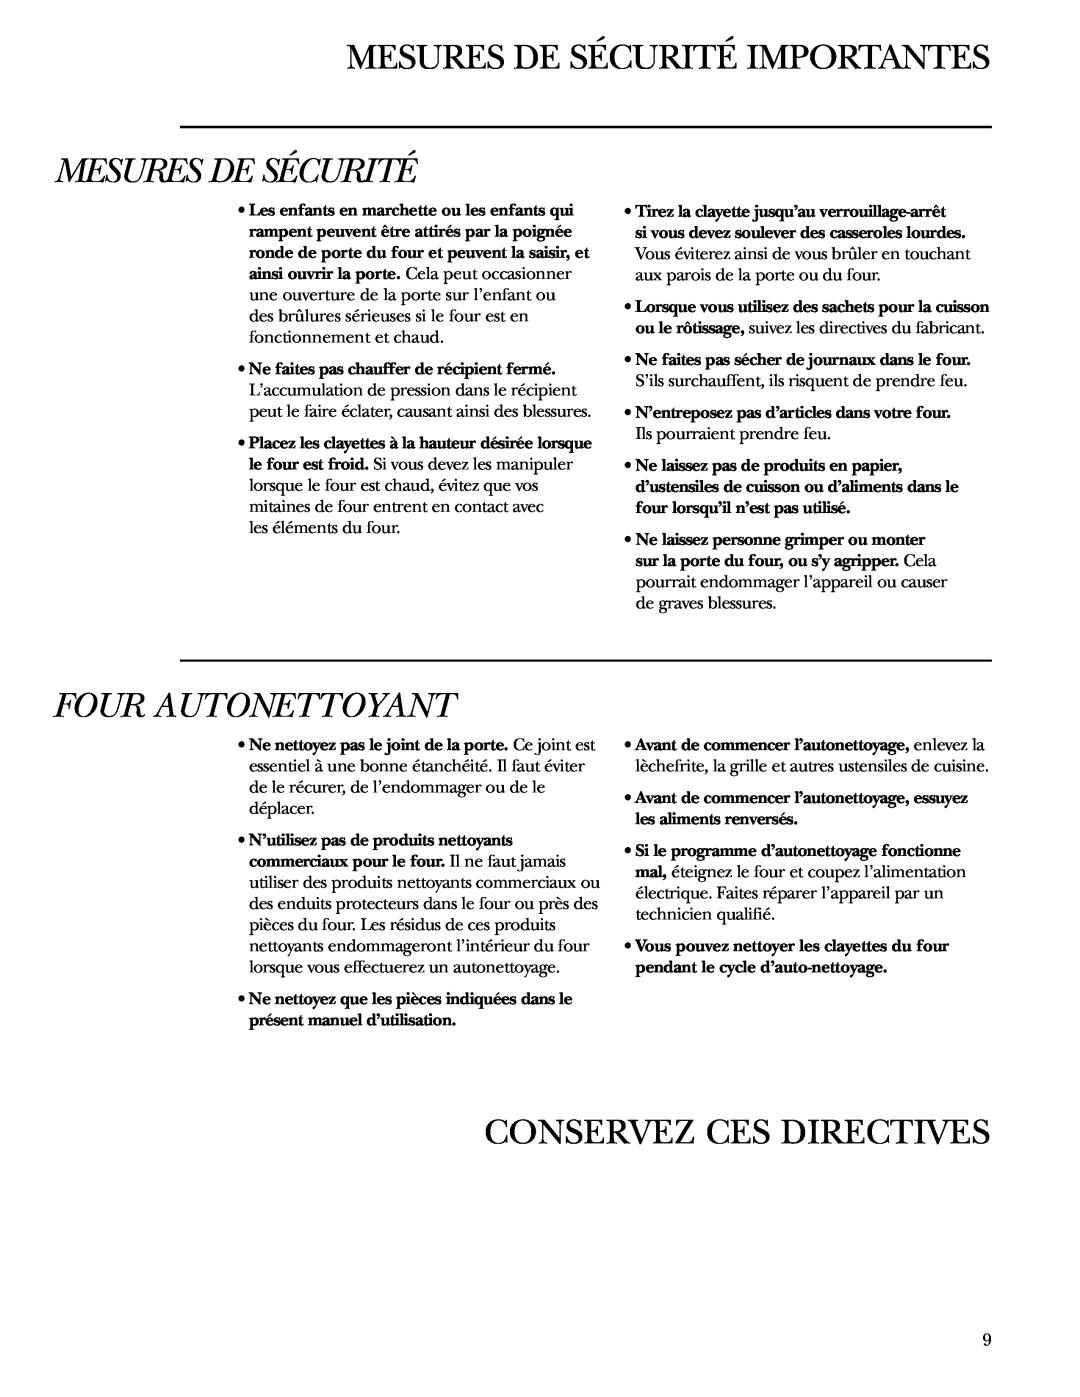 GE Monogram ZET1038, ZET1058 owner manual Four Autonettoyant, Conservez Ces Directives, Mesures De Sécurité Importantes 